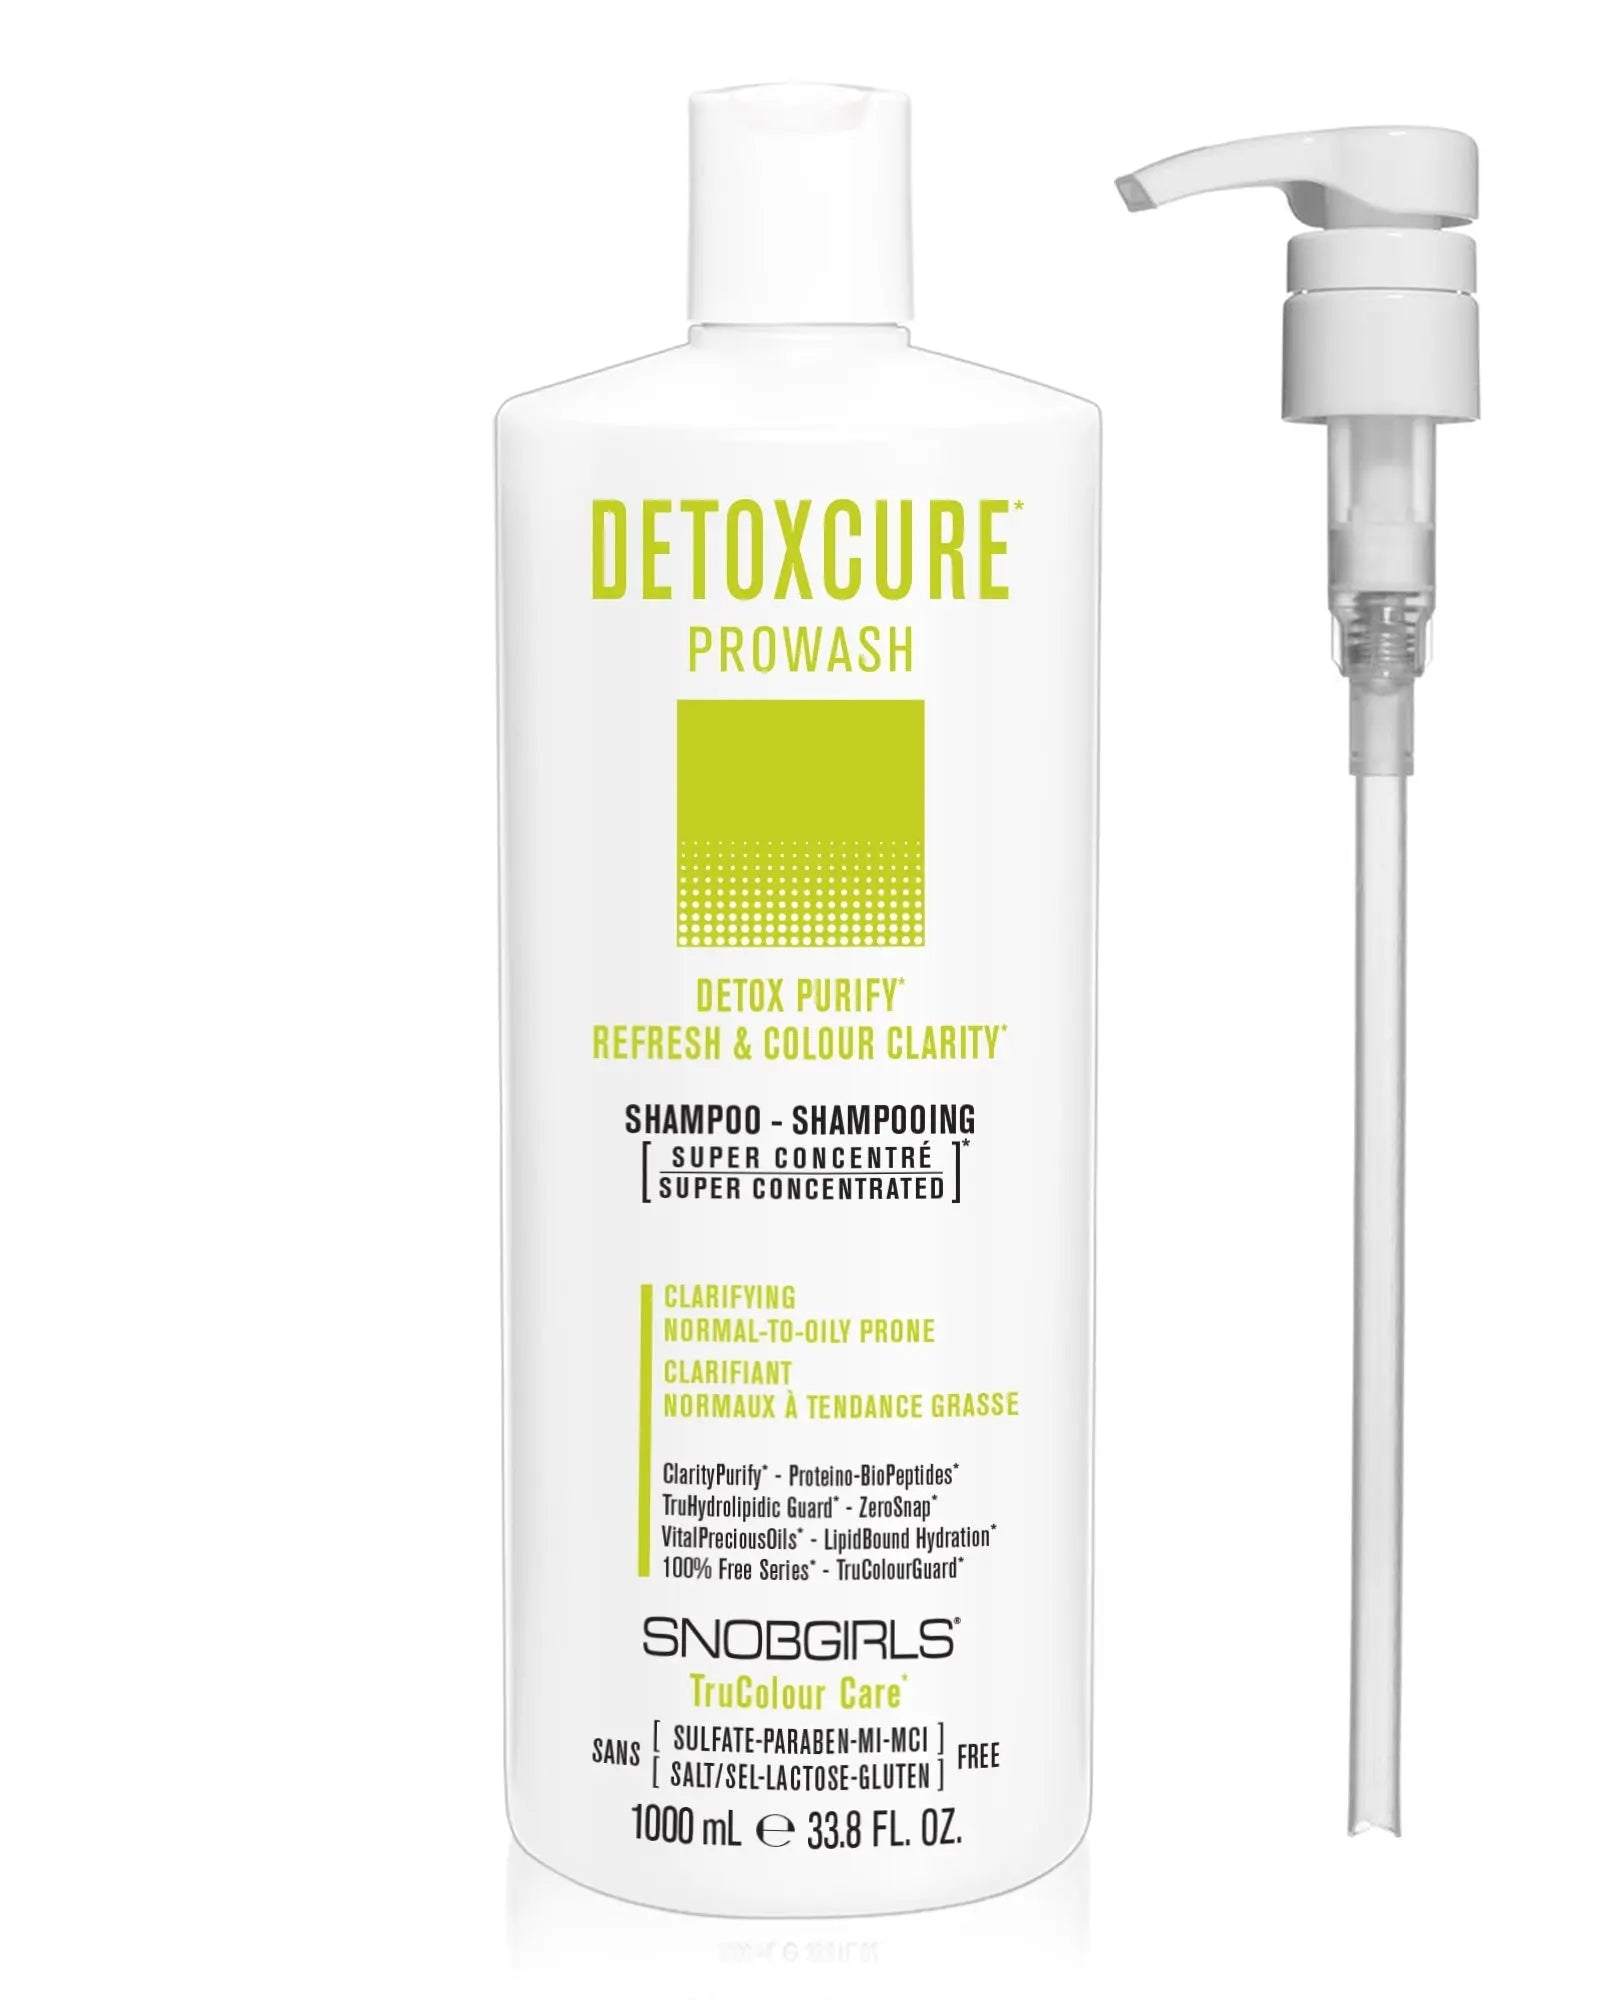 DETOXCURE Prowash (shampoo) 33.8 FL. OZ. + Pump - SNOBGIRLS.com